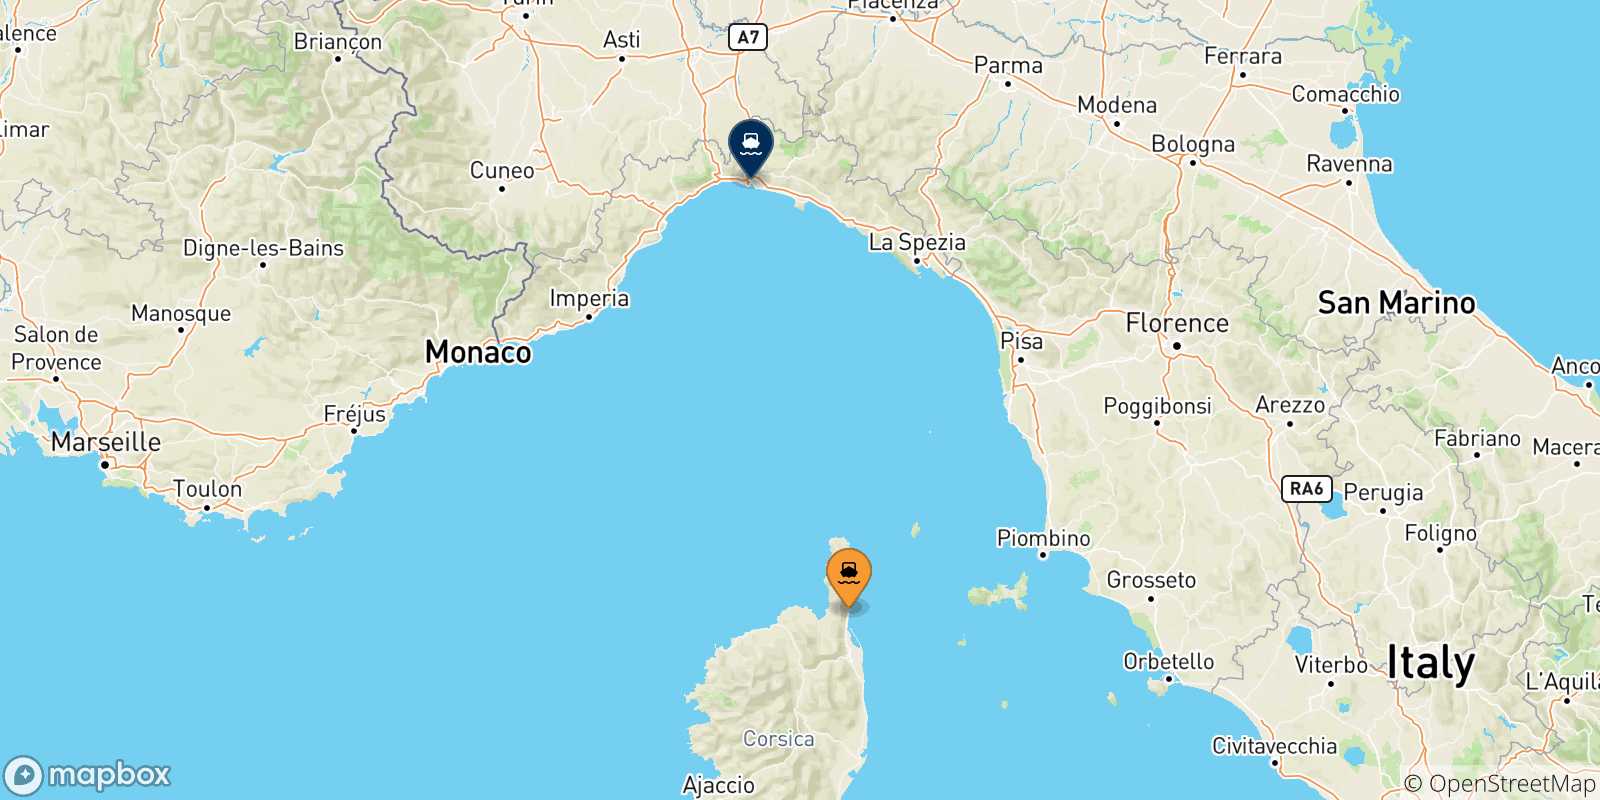 Mappa delle possibili rotte tra la Corsica e Genova